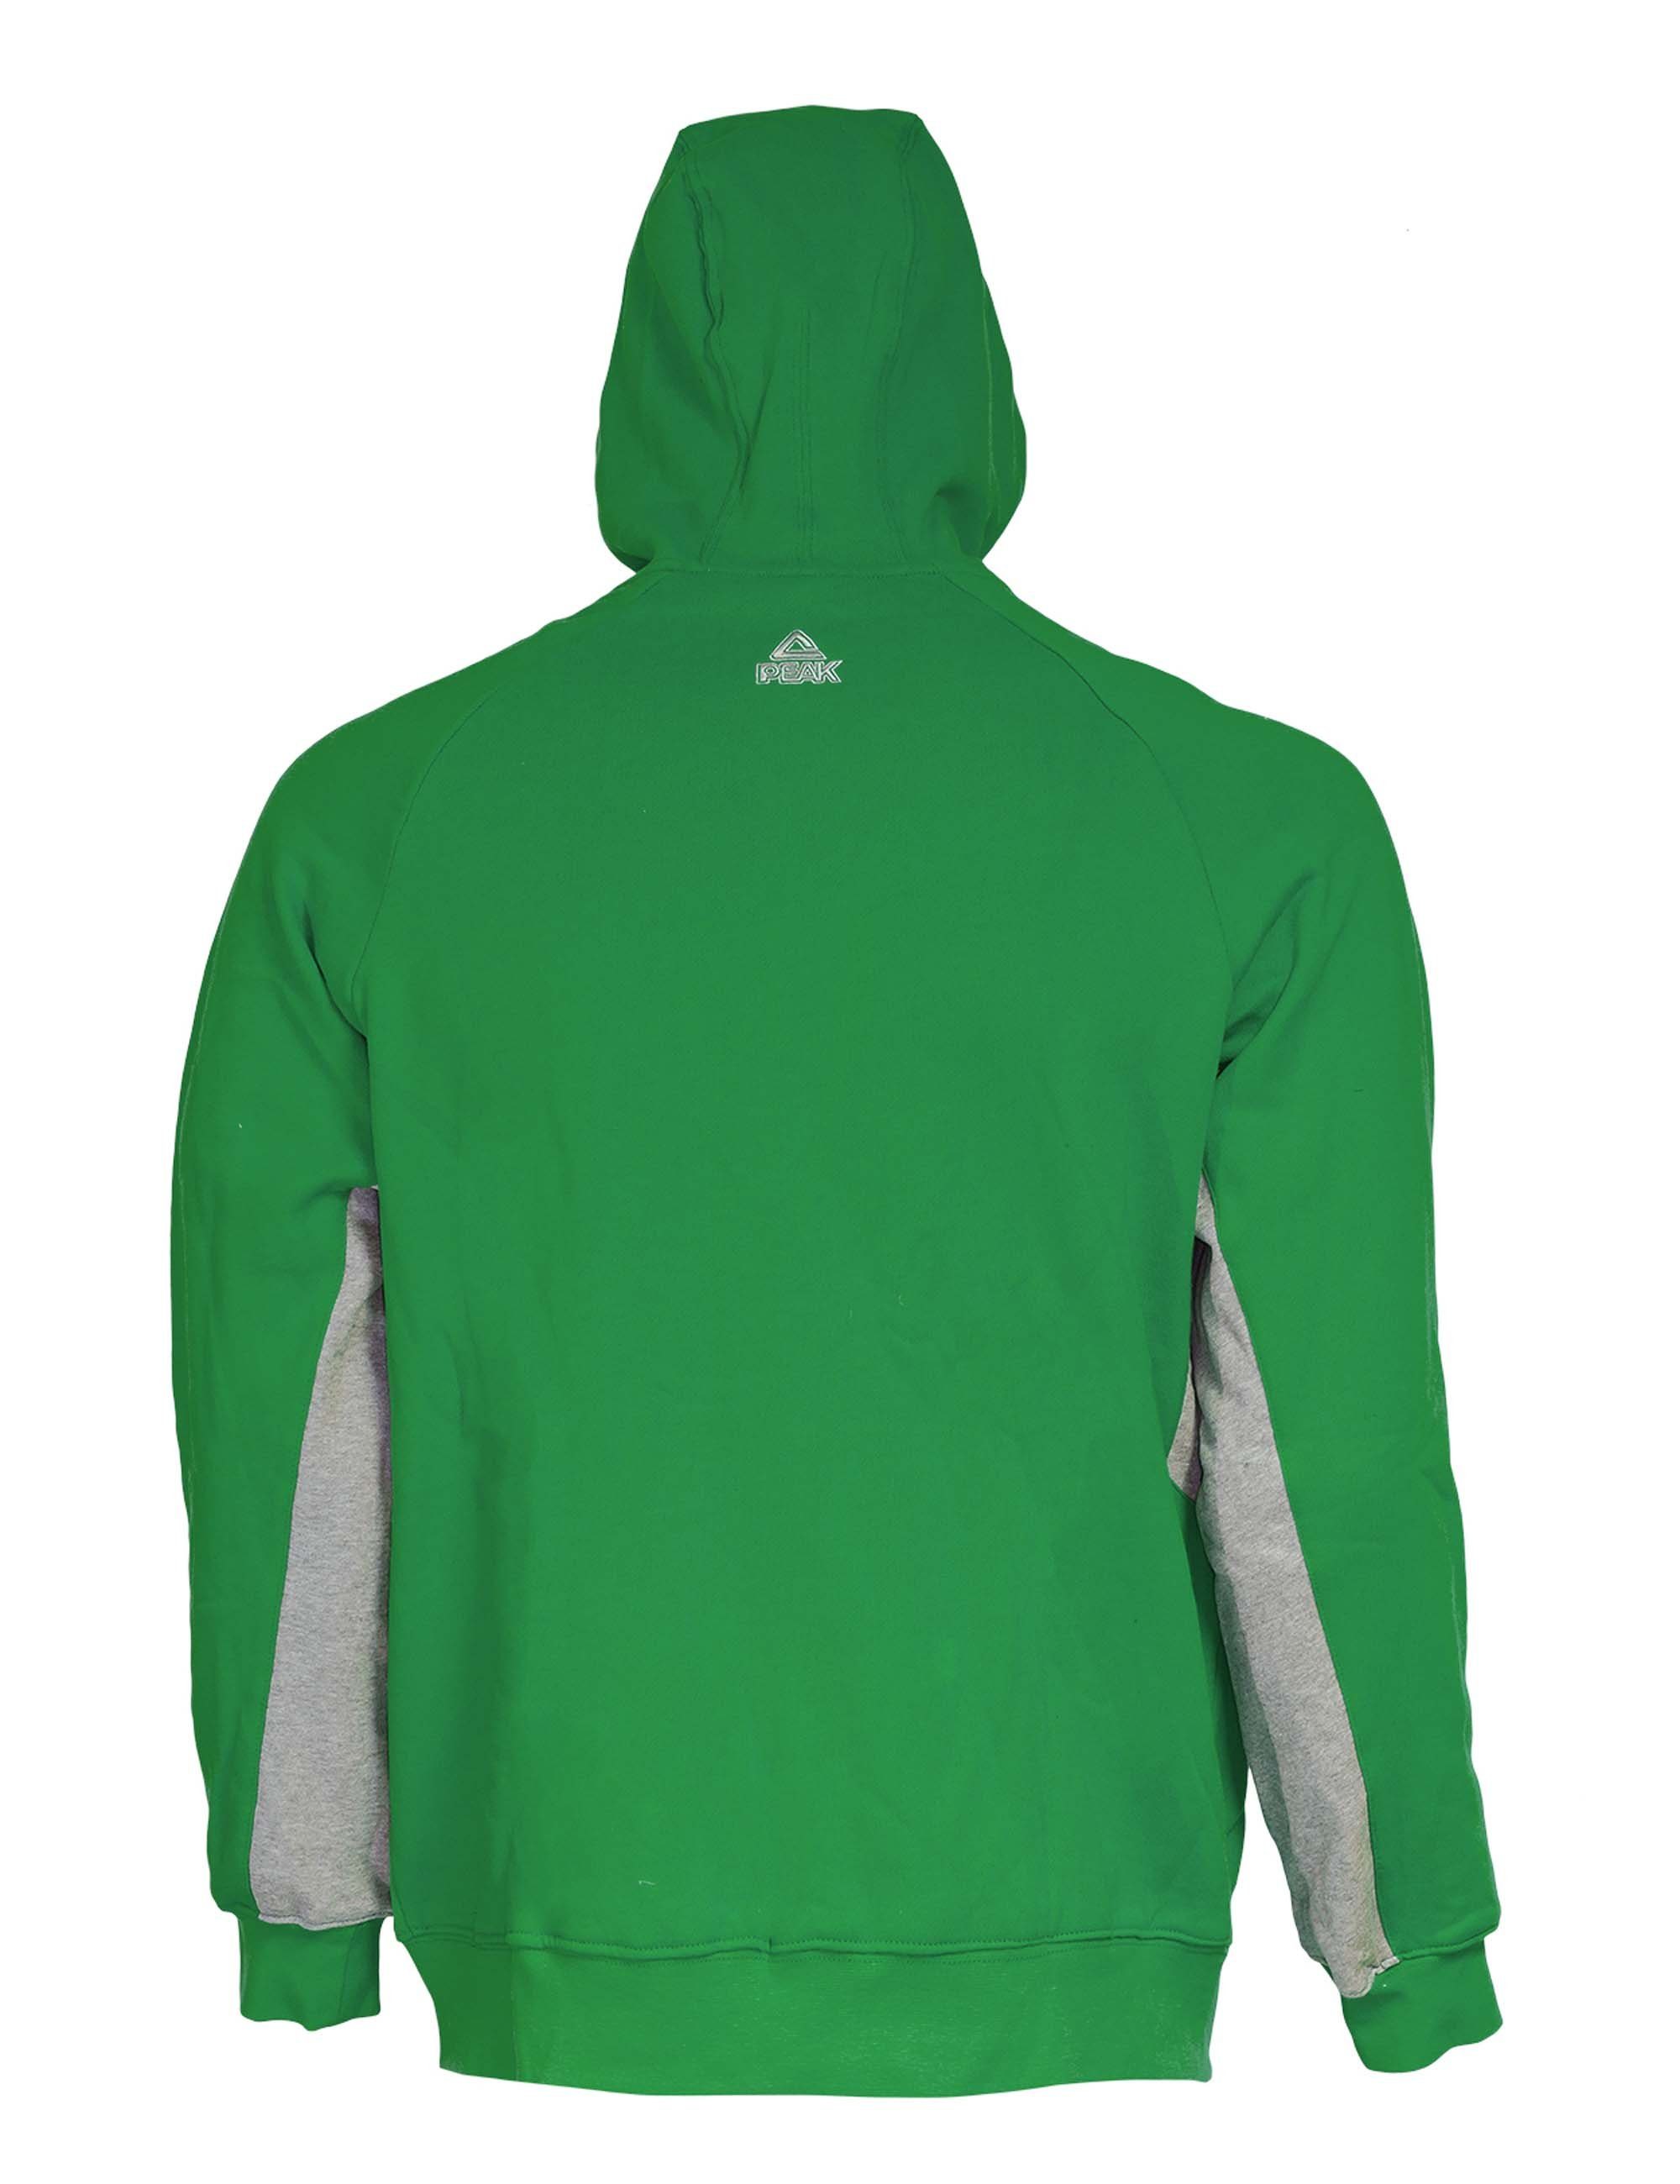 PEAK Sweatjacke Zip Hoody im Look grün sportlichen